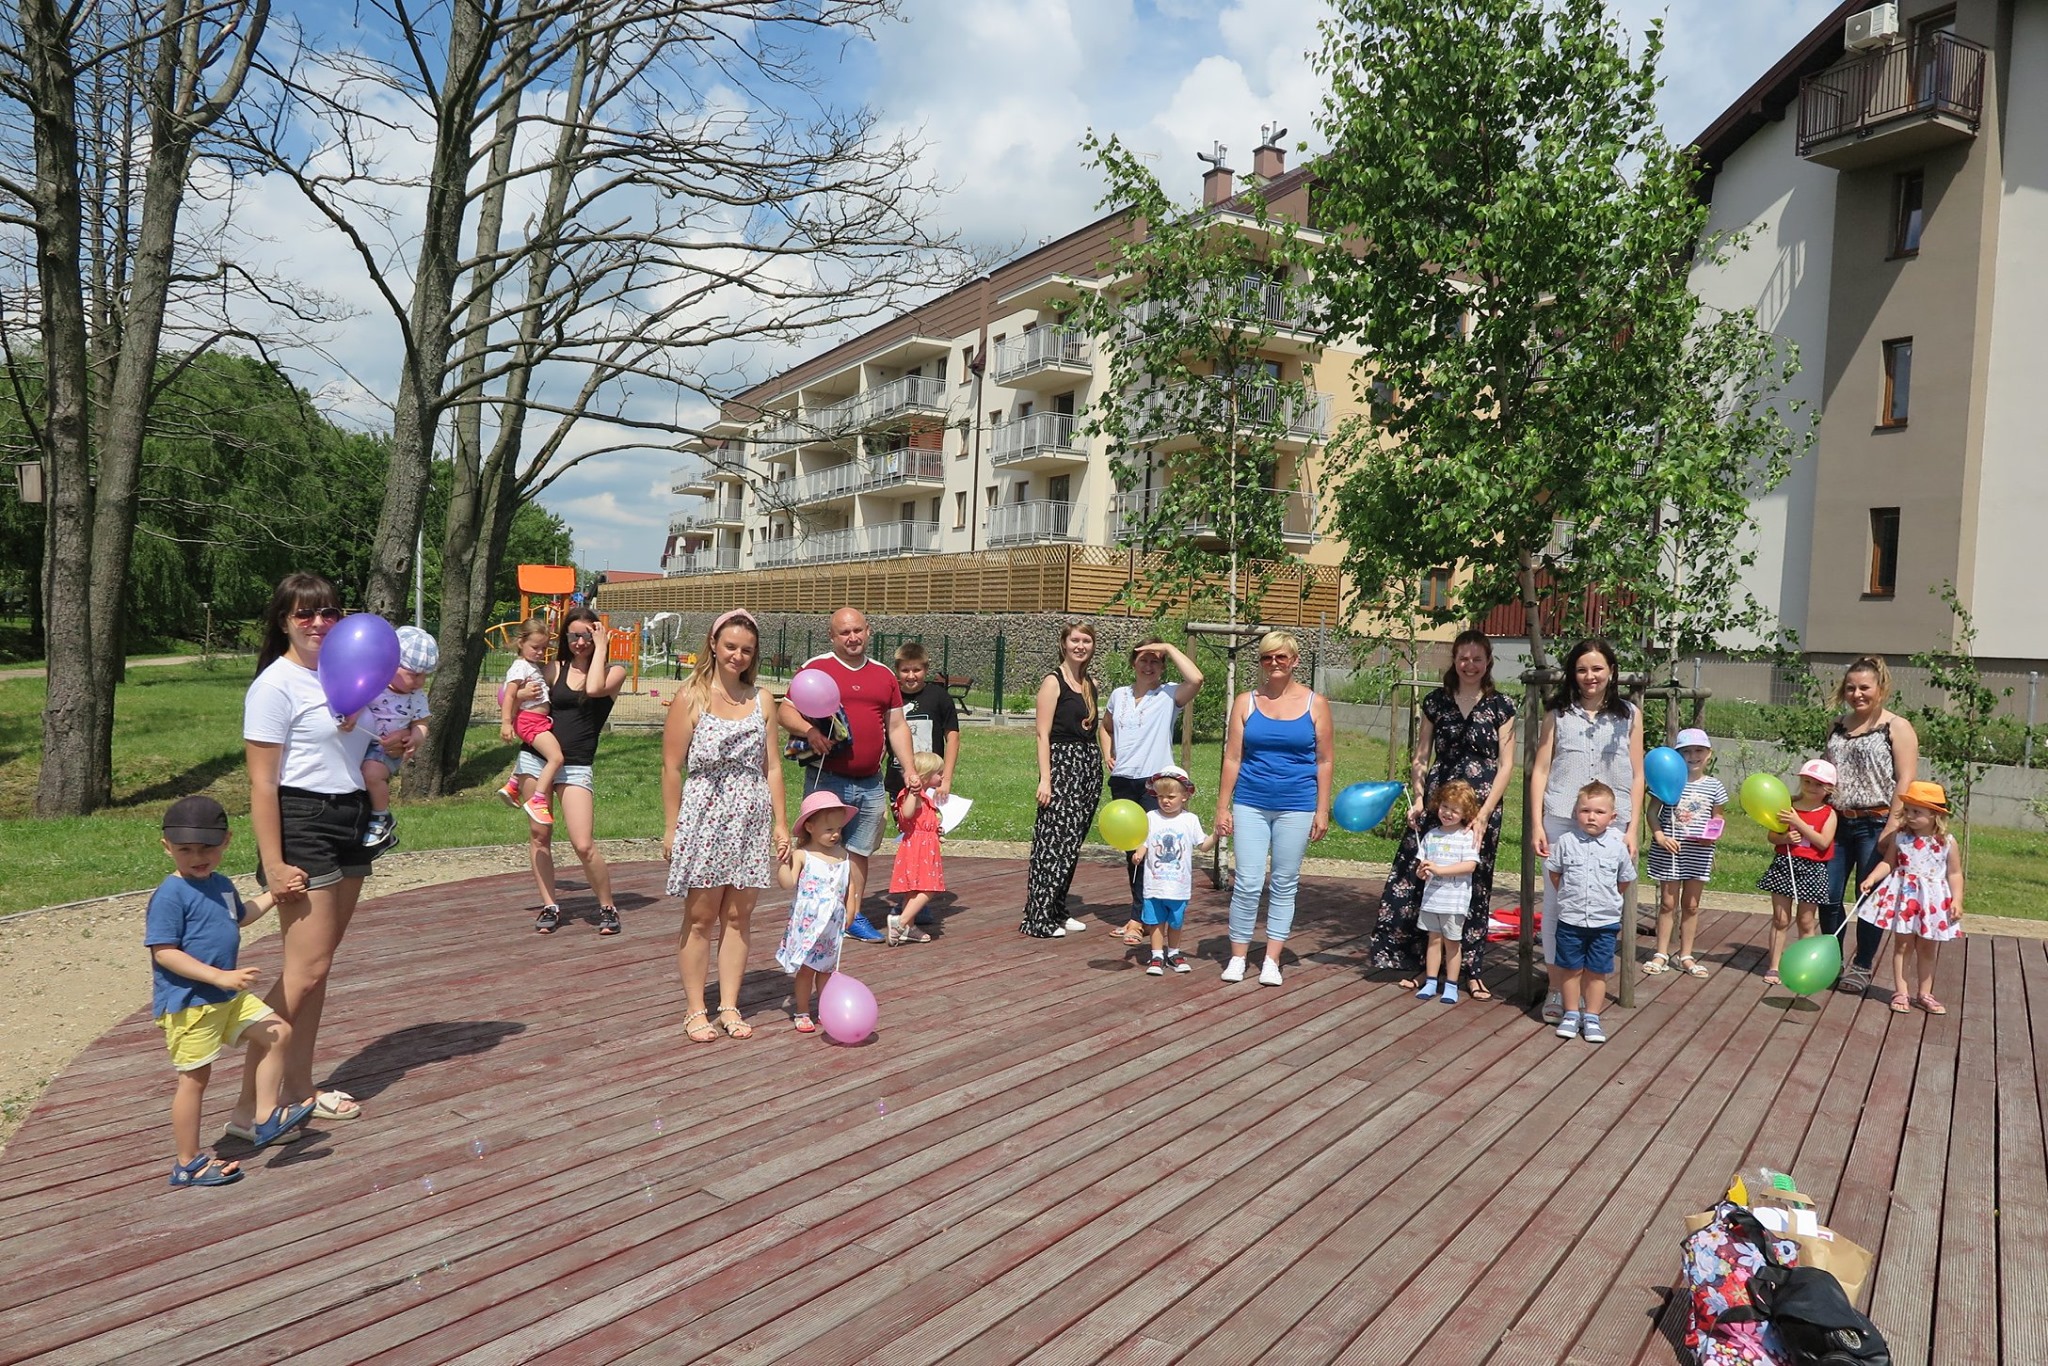 W parku bibliotekarka Aleksandra Cybulska zorganizowała spotkanie Klubu Malucha. 12 dzieci wraz z opiekunami uczestniczą w spotkaniu. Dzieci trzymają w ręku balony.